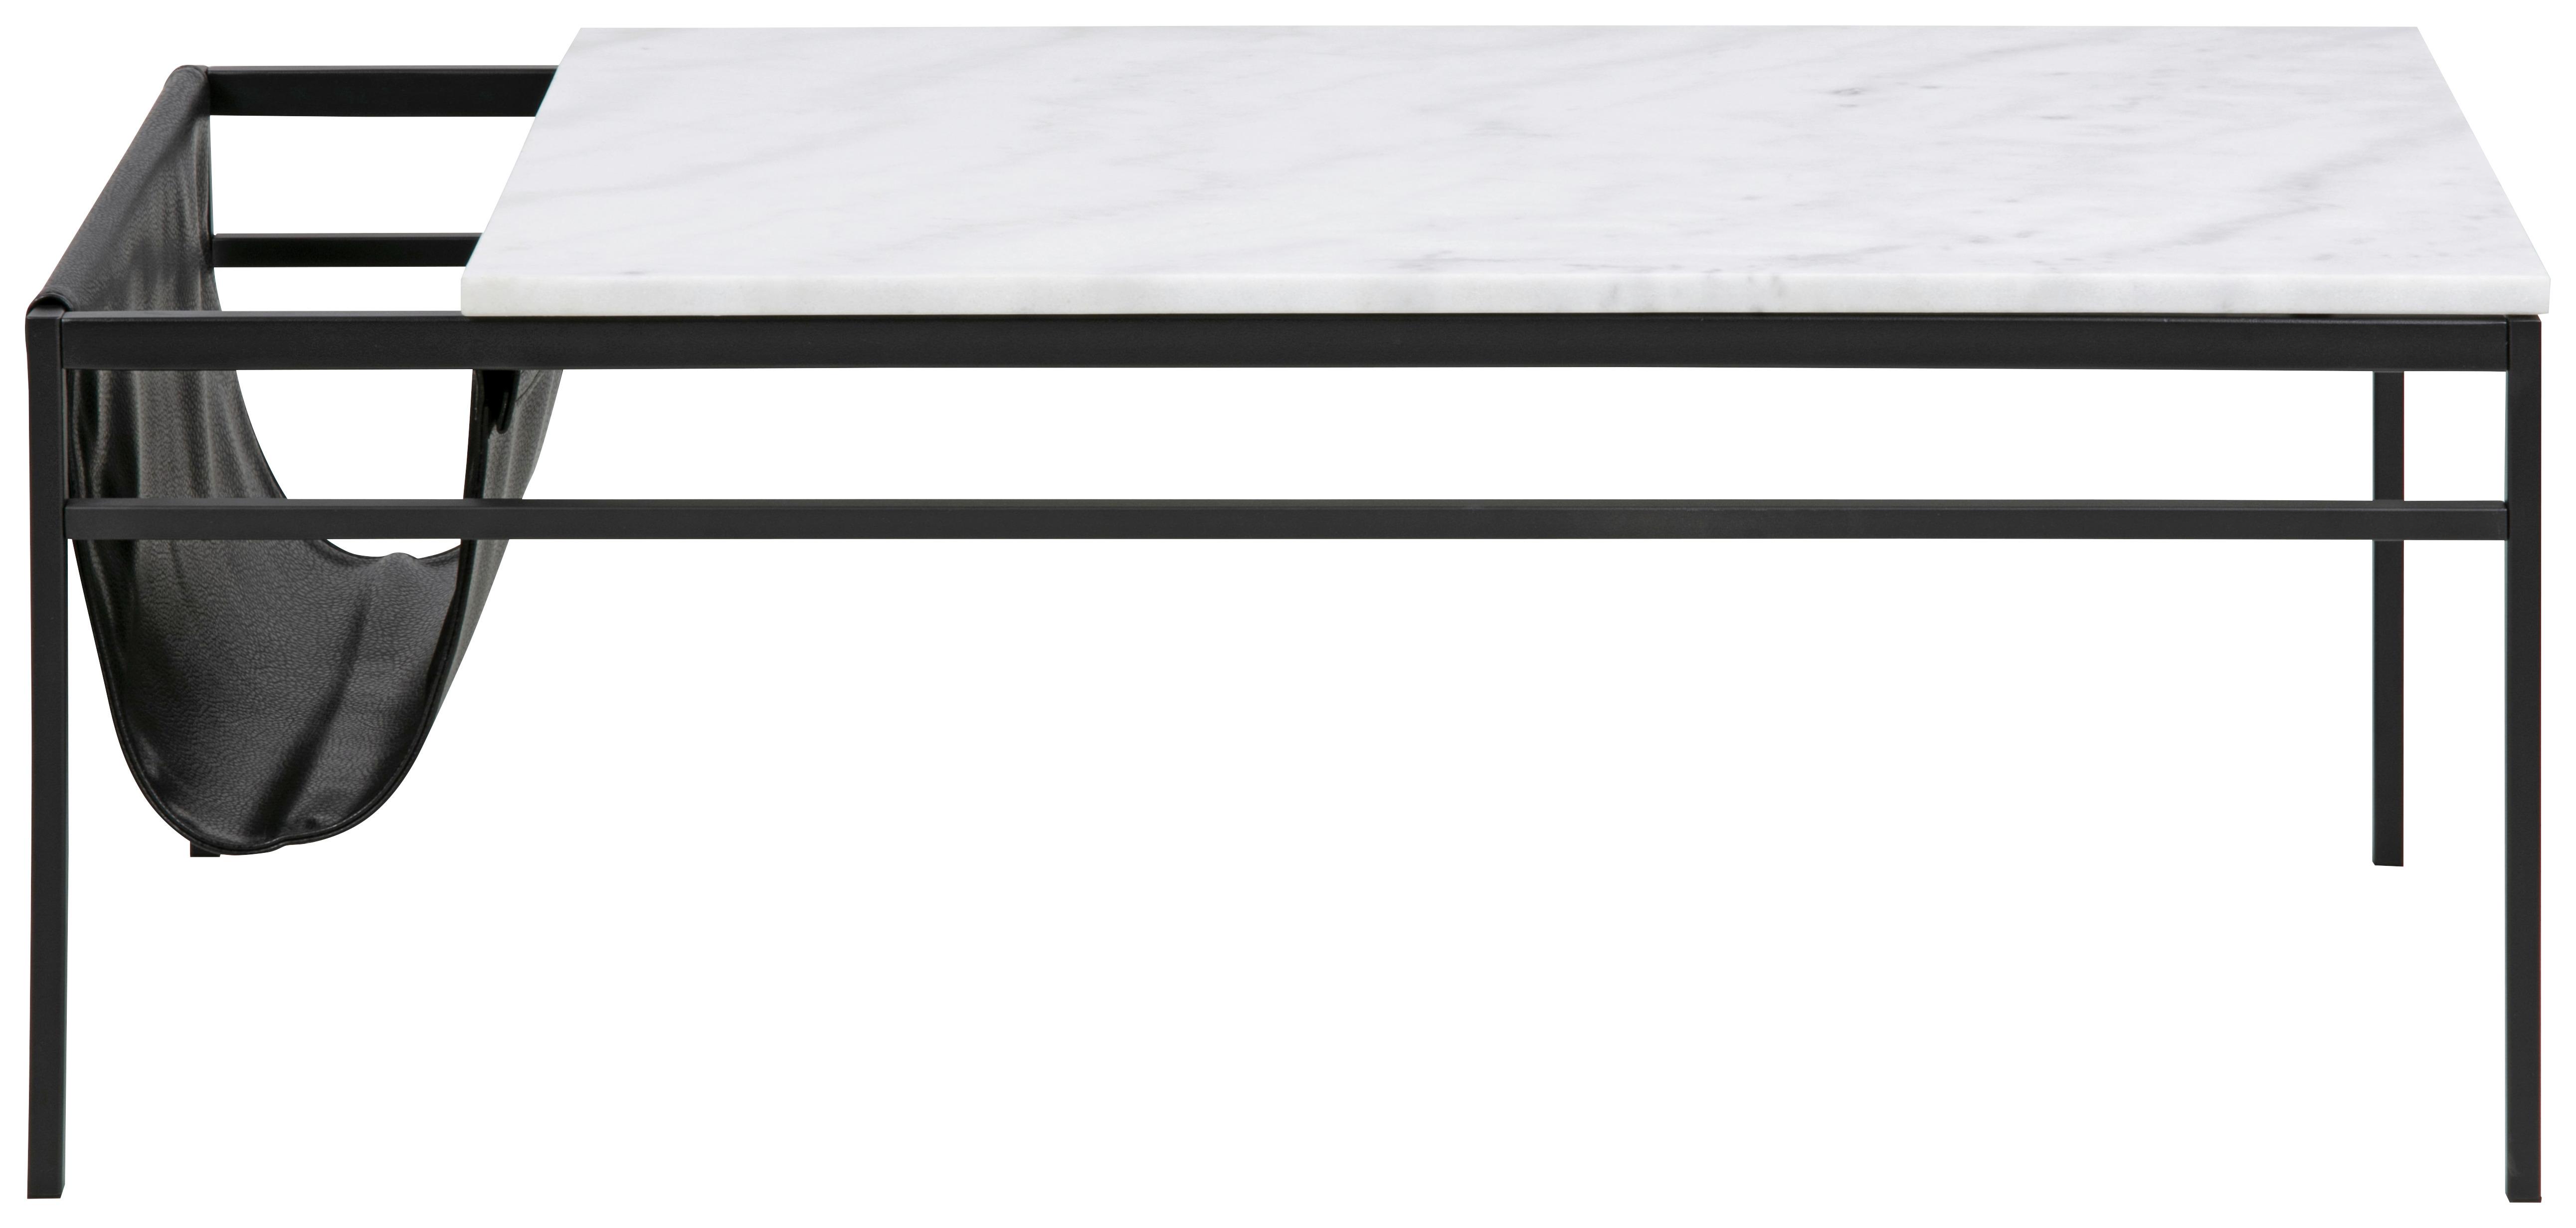 Couchtisch mit Marmorplatte Atalaya, Weiß/Schwarz - Schwarz/Weiß, MODERN, Textil/Stein (115/58/45cm) - Carryhome